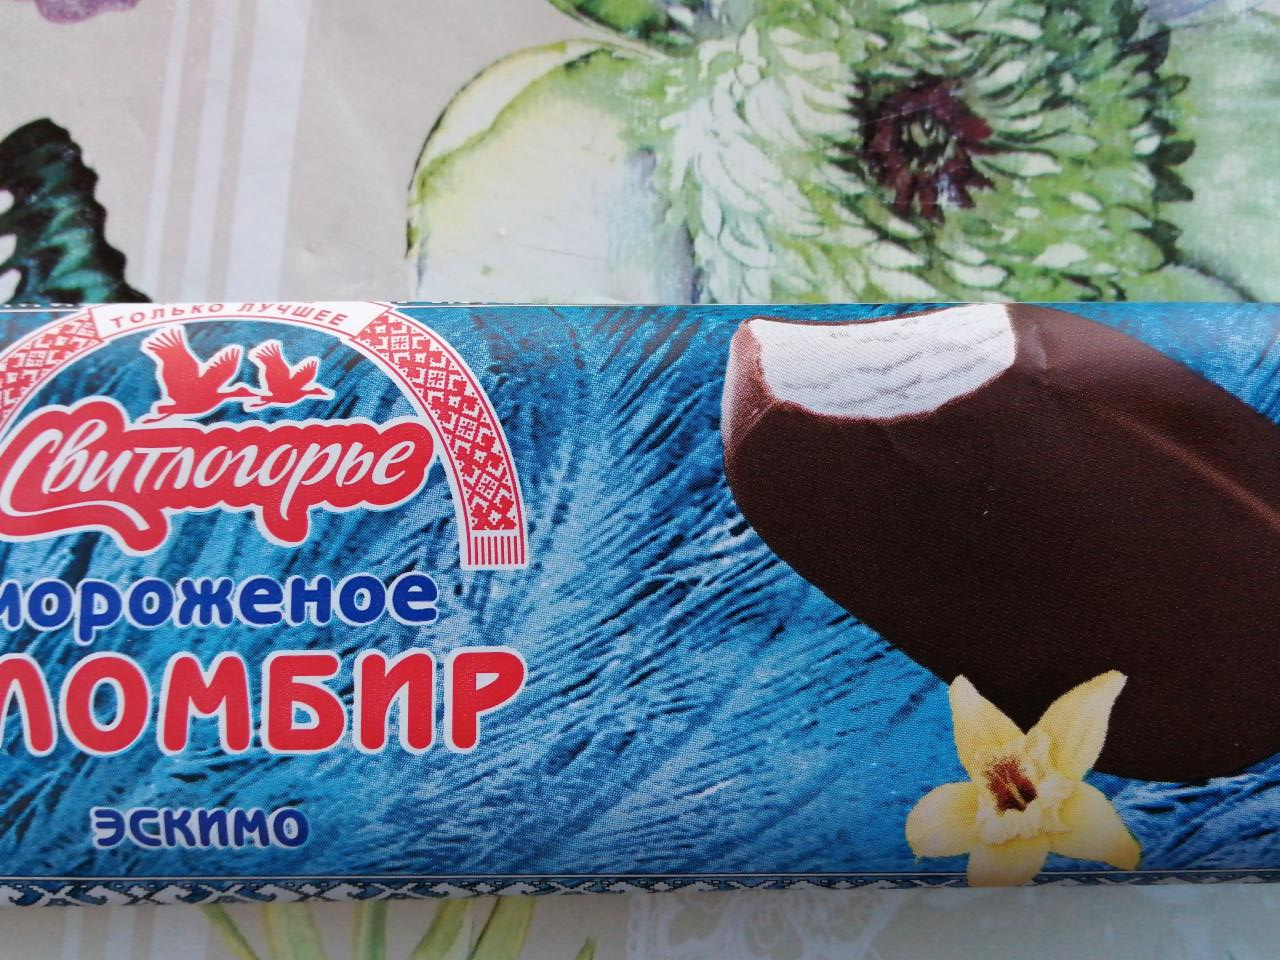 Фото - Мороженое пломбир с ванилью в сливочной какаосодержащей глазури эскимо Свитлогорье